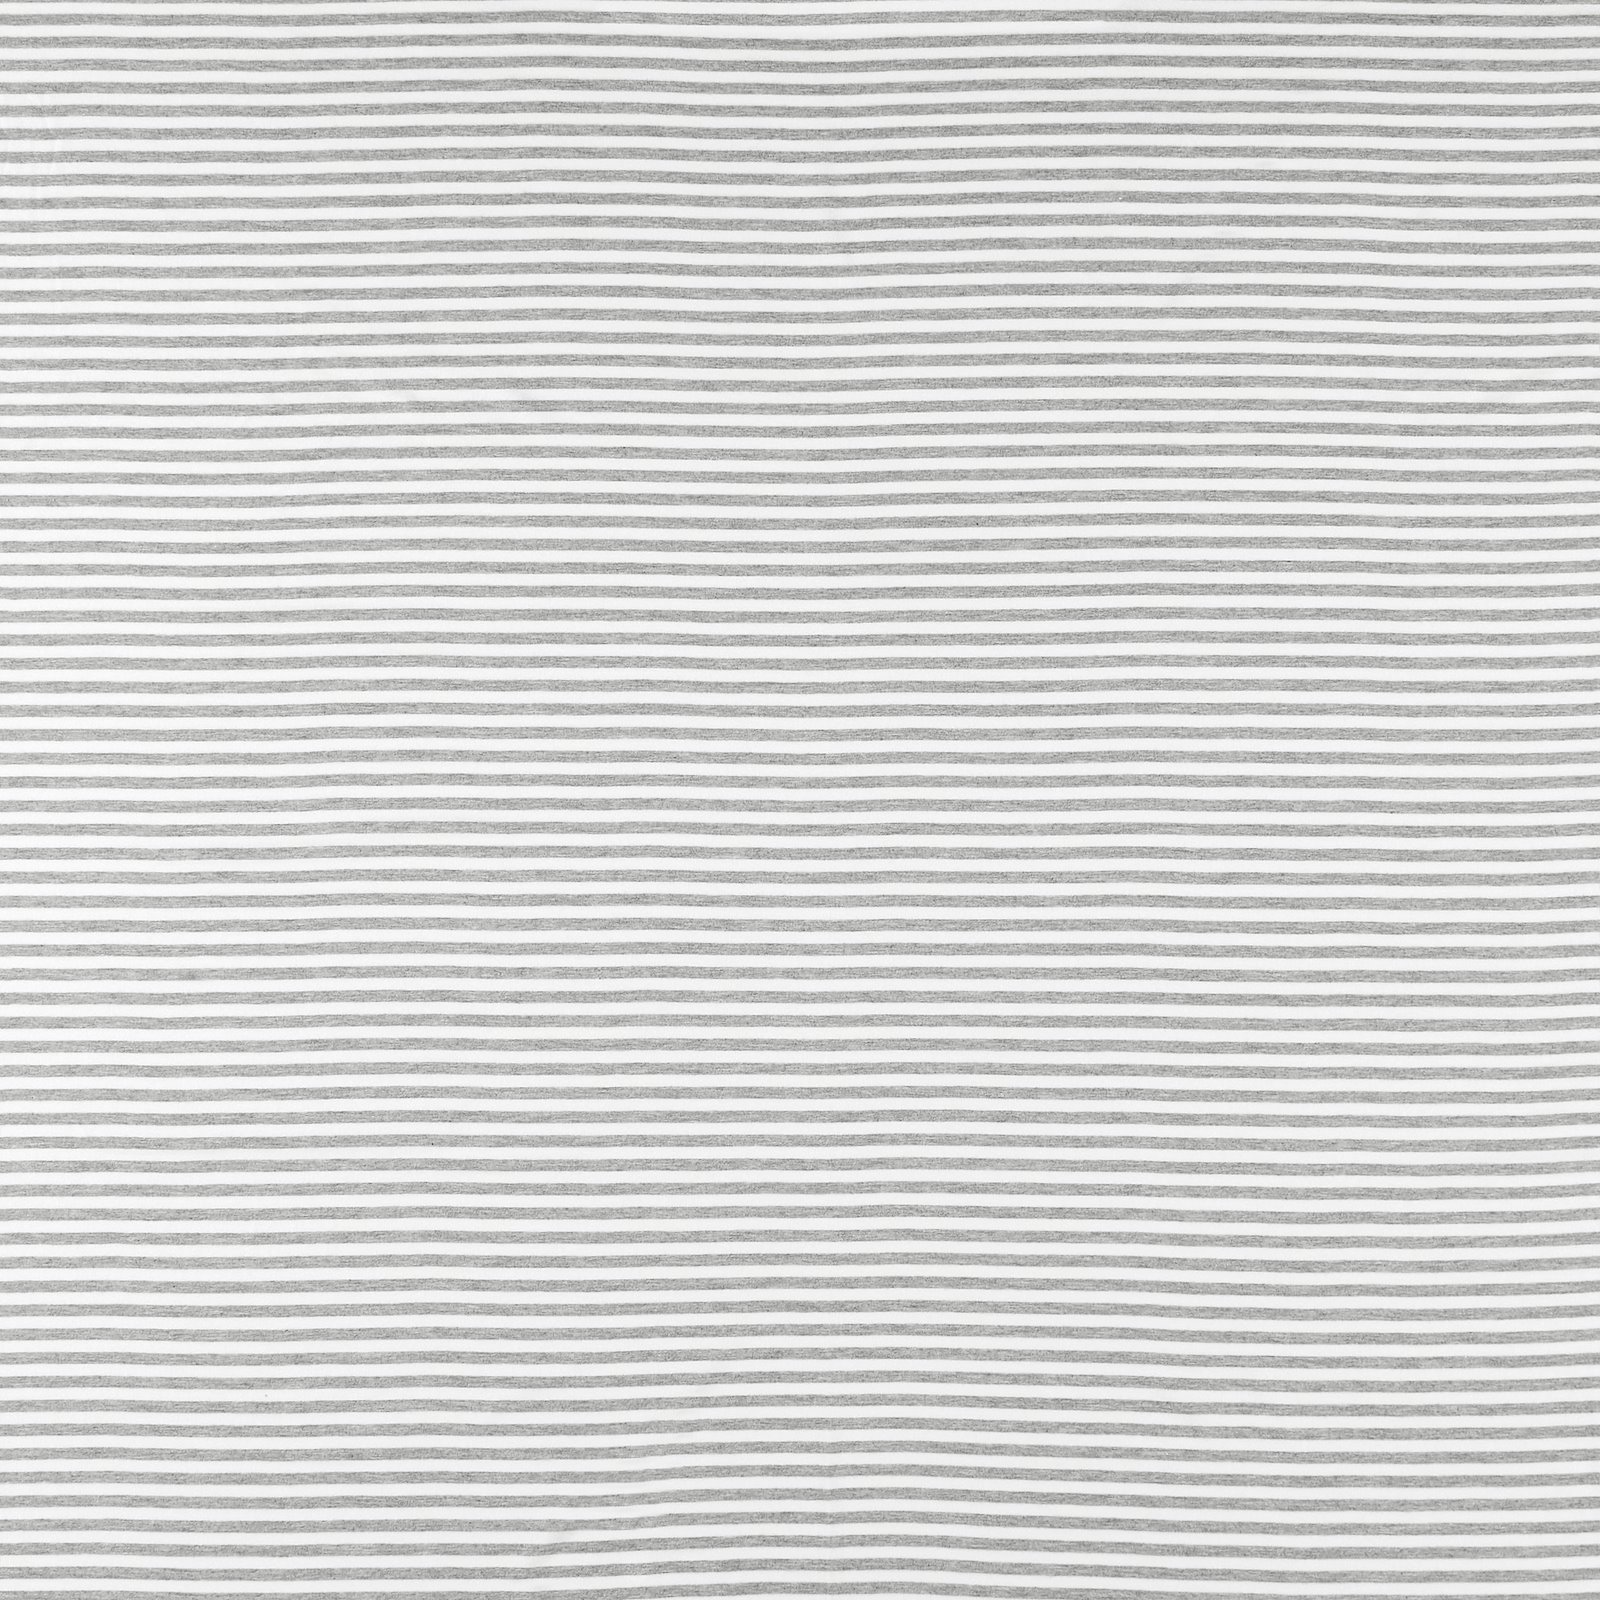 Viskose Jersey, grau/weiß gestreift garngefärbt 273172_pack_sp